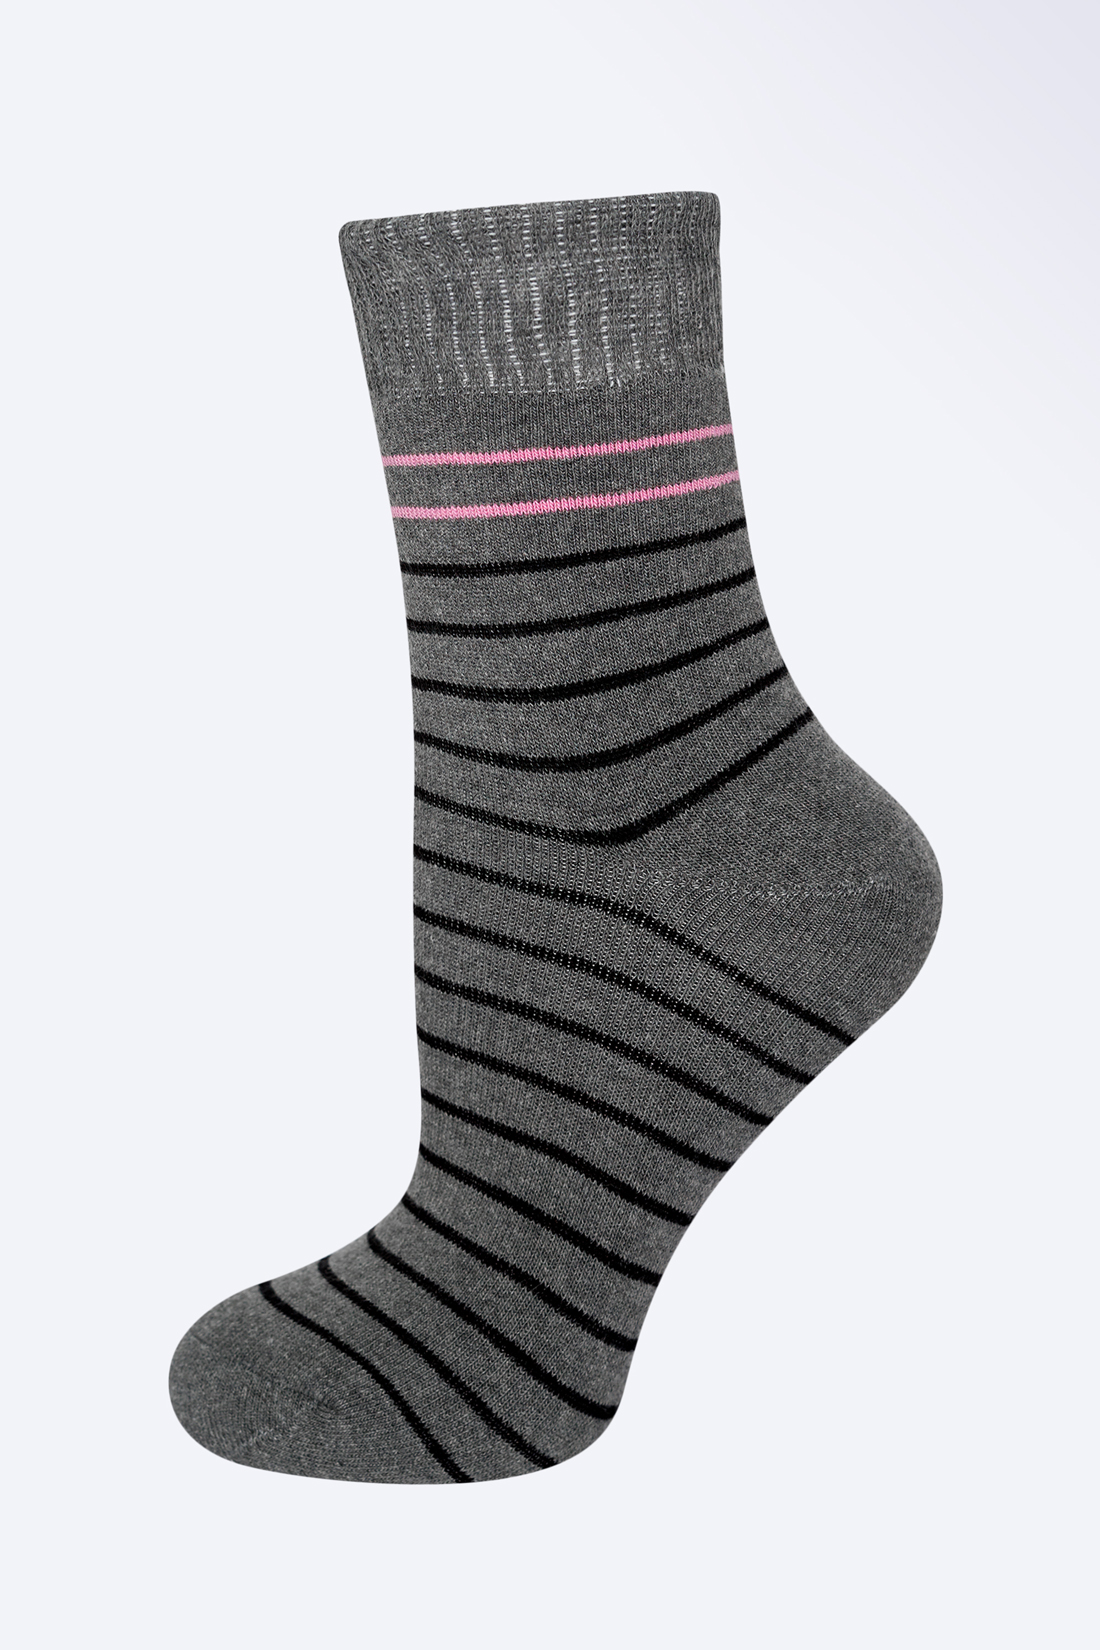 Носки с полосками (арт. baon B399524), размер 38/40, цвет zircon melange#серый